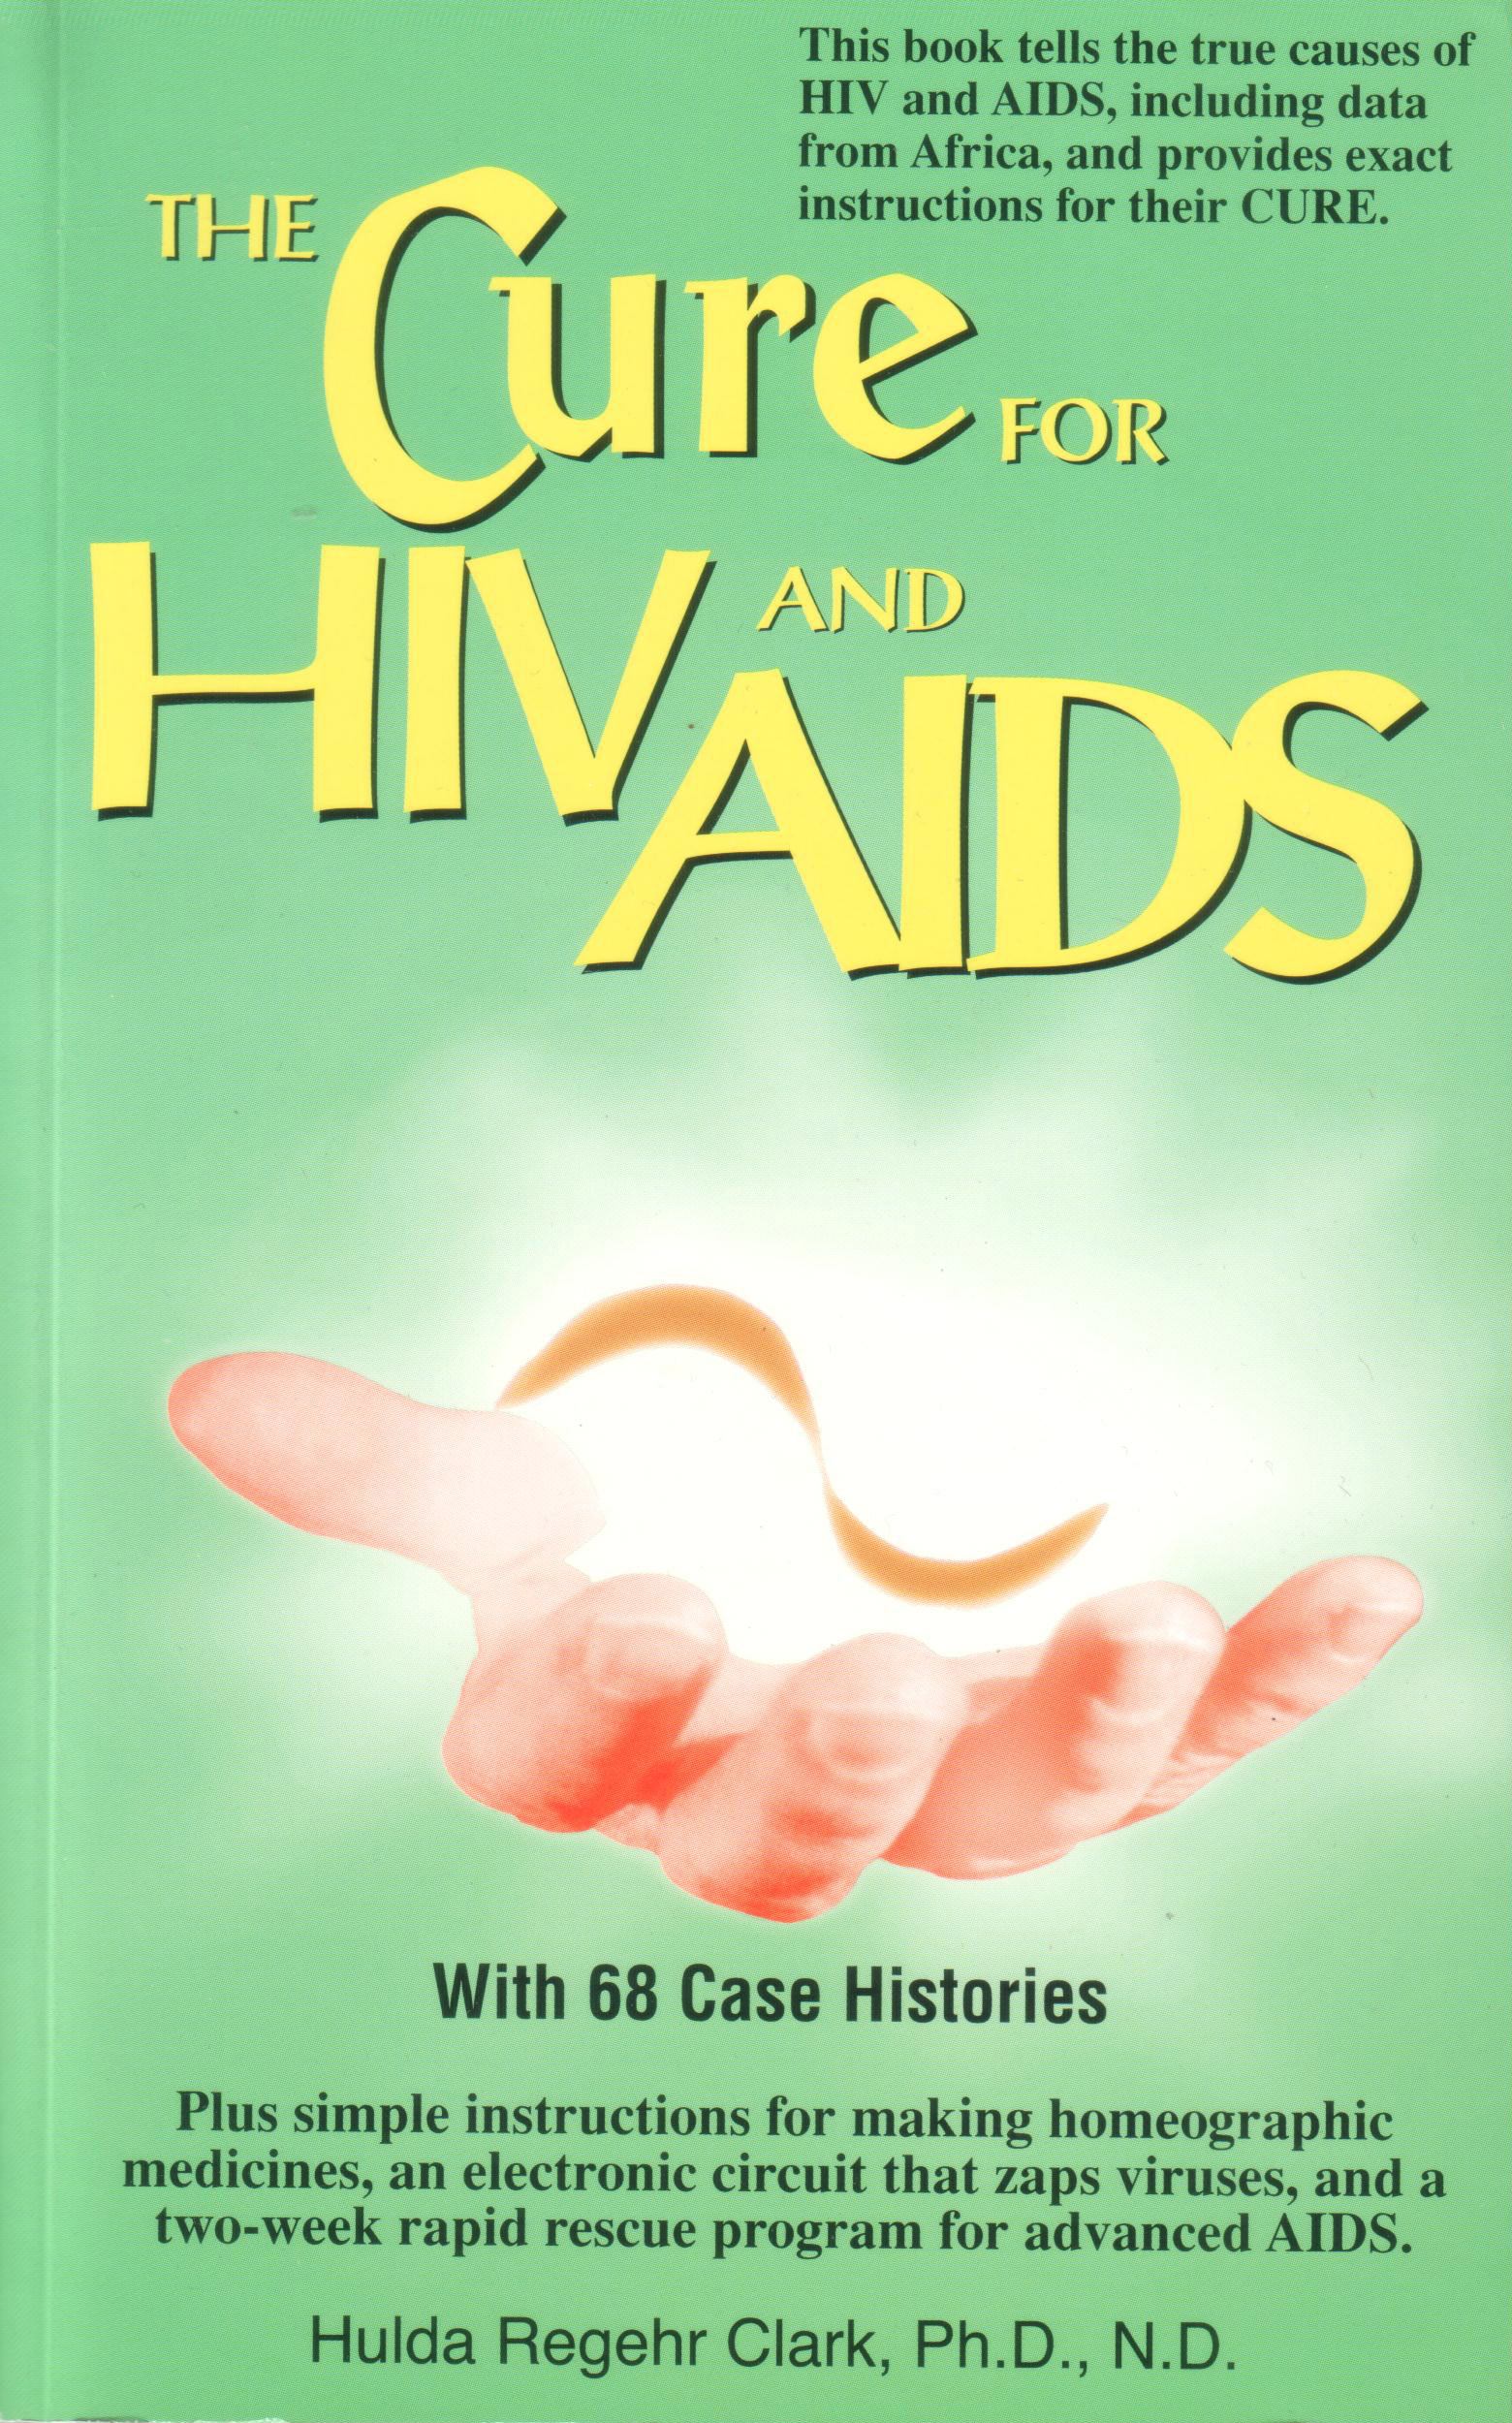 The Cure for HIV and Aids von Dr. Hulda Clark auf englisch